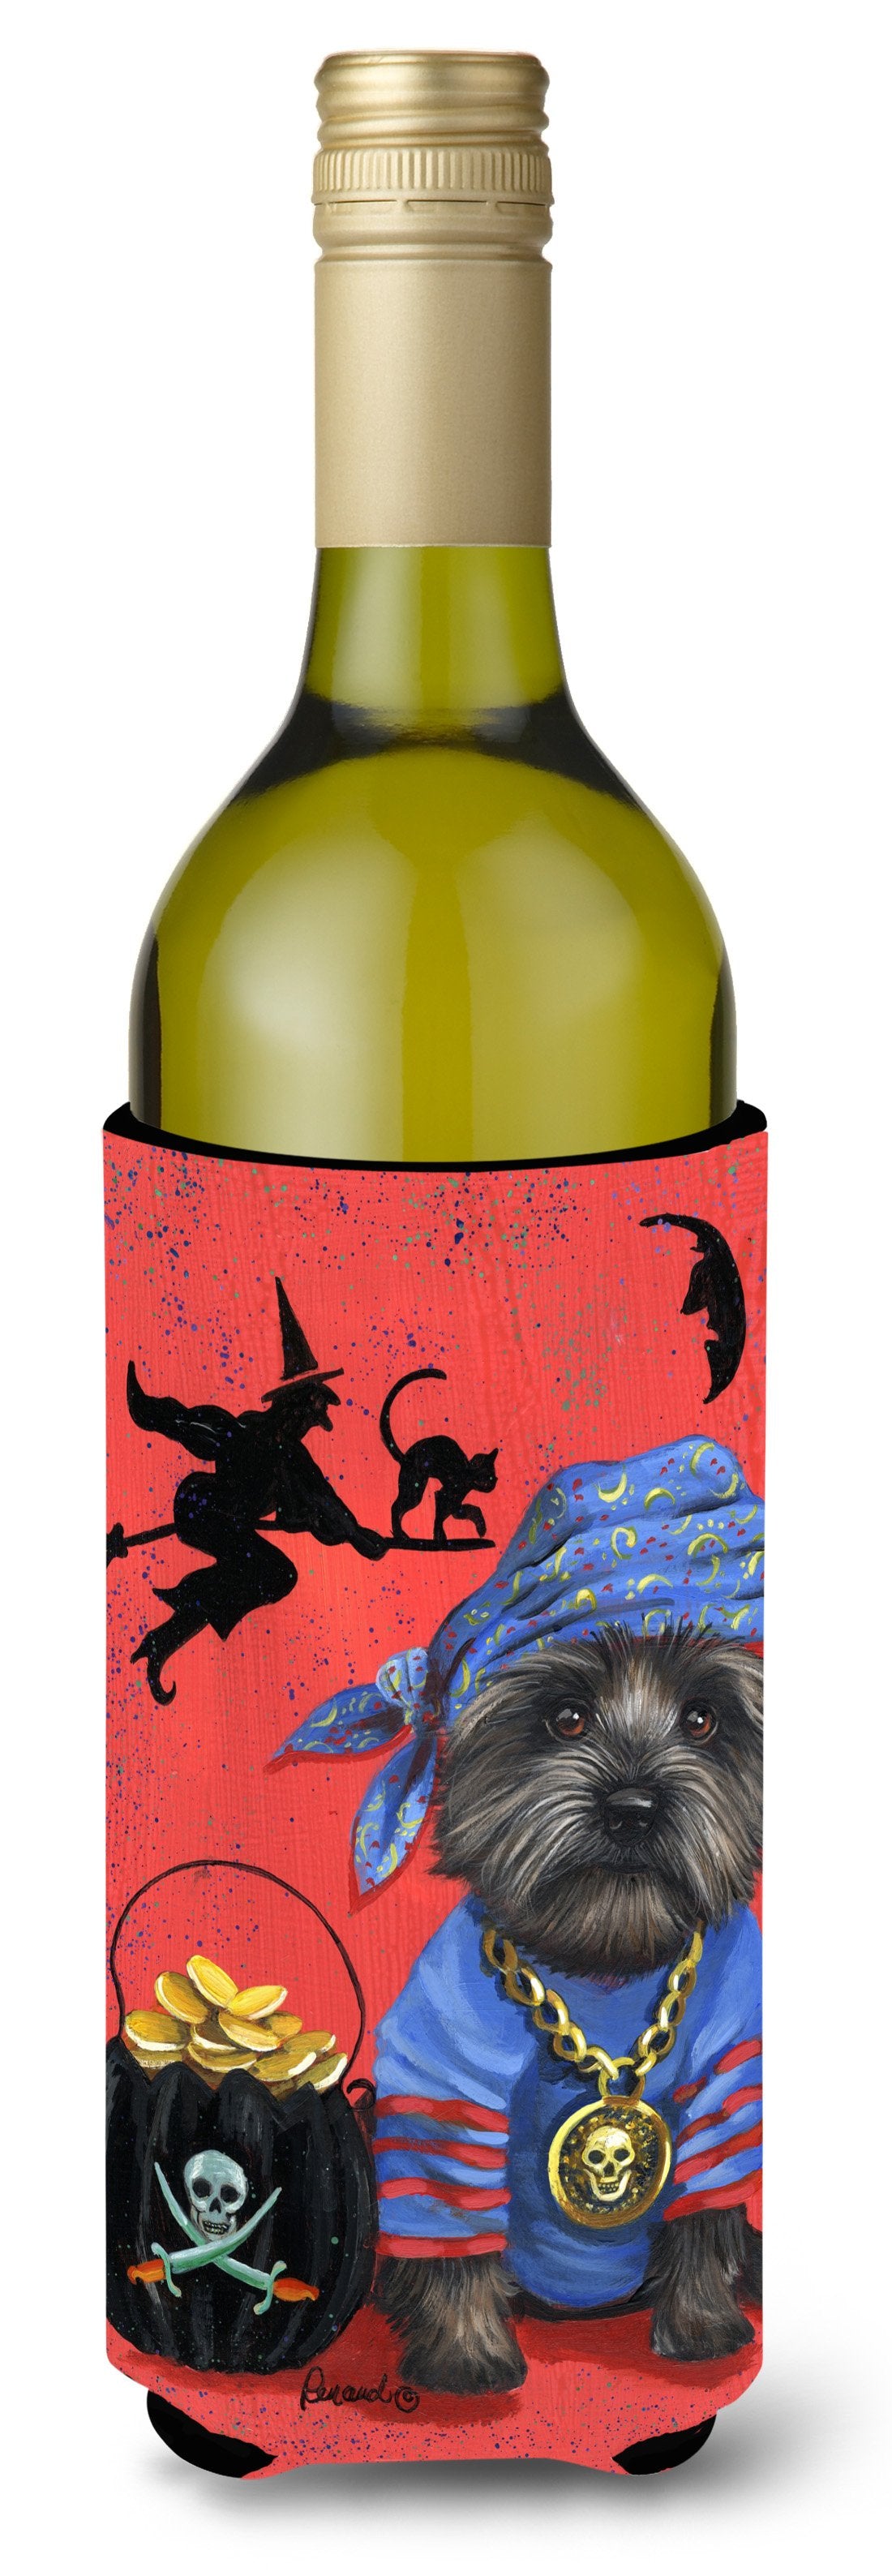 Cairn Terrier Black Pirate Halloween Wine Bottle Hugger PPP3044LITERK by Caroline's Treasures